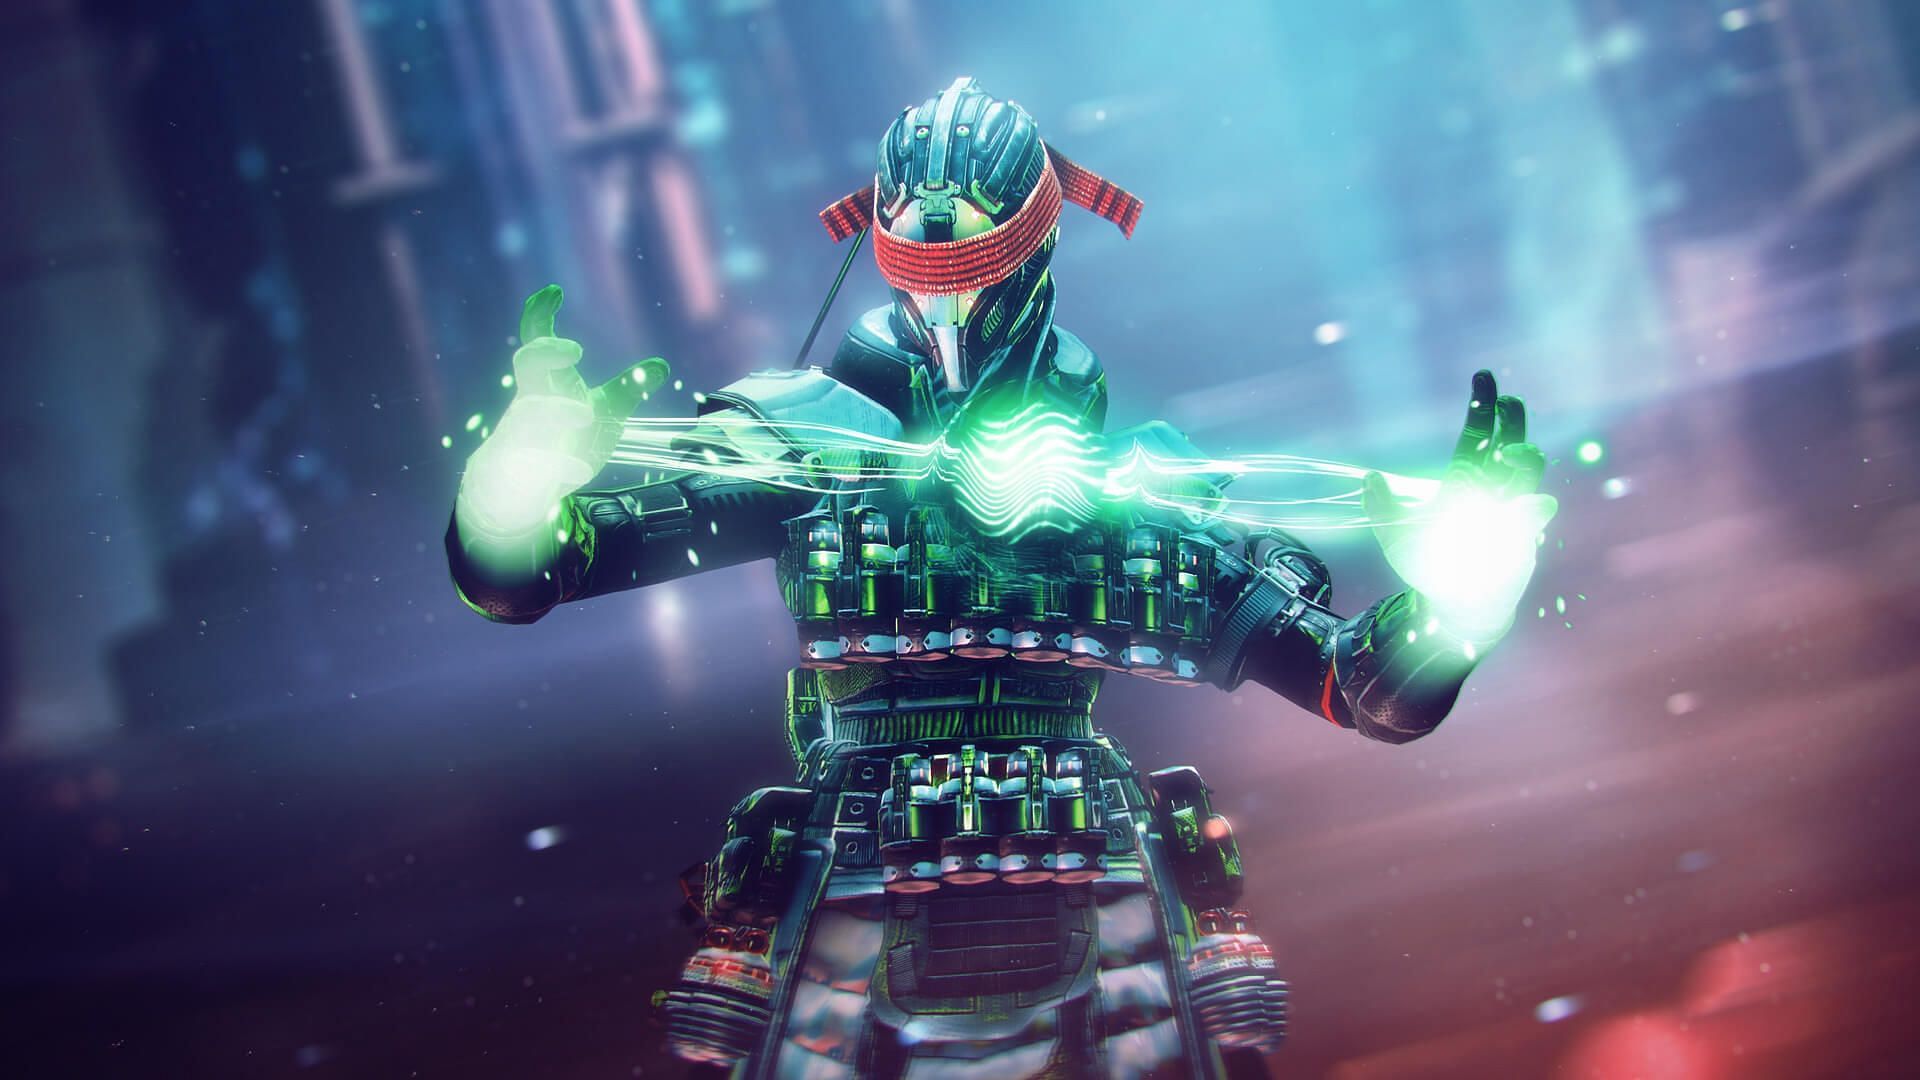 Destiny 2 armor for Lightfall (Image via Bungie)